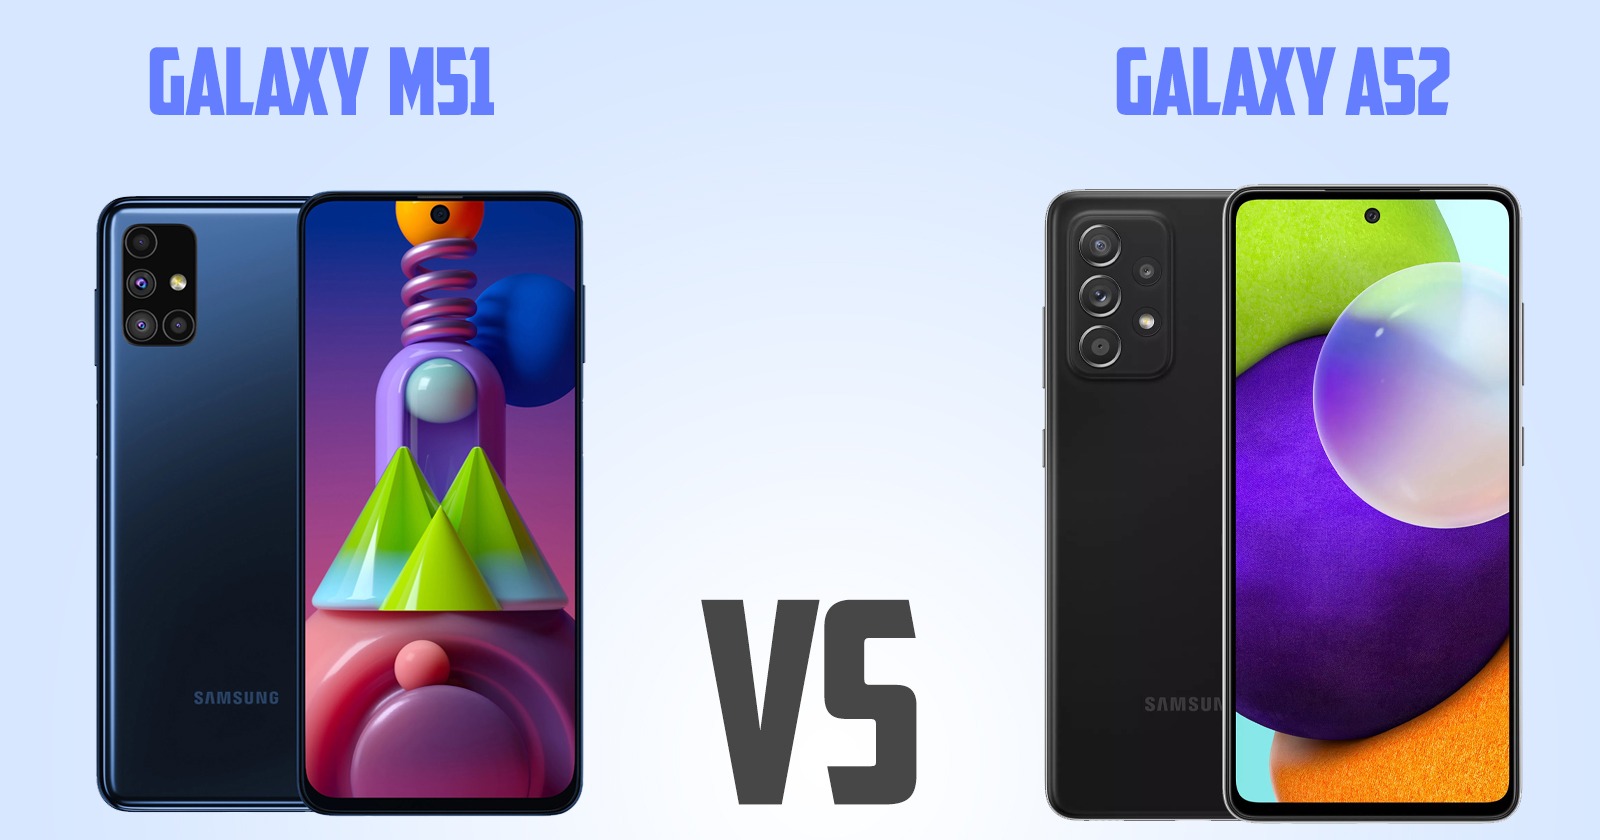 Samsung Galaxy A52 vs Samsung Galaxy M51 [ Full Comparison ]